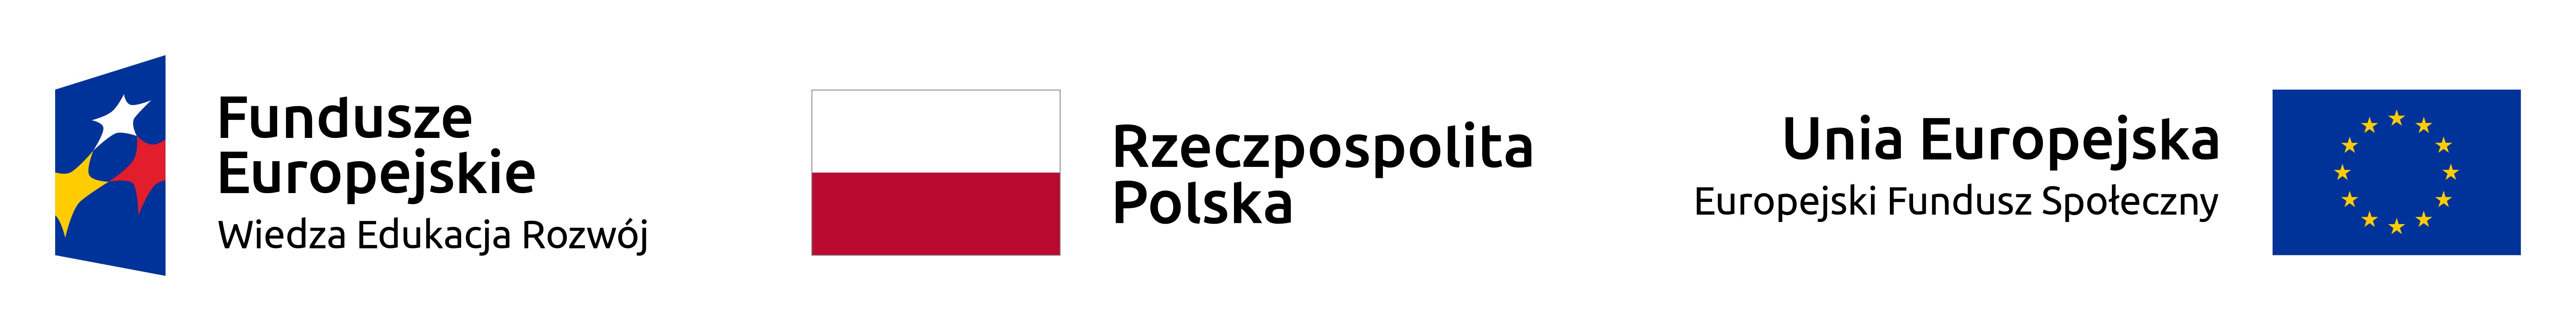 flaga Fundusze Europejskie Wiedza Edukacja Rozwój - na niebieskim tle widoczna gwiazda biała, żółta i czerwona, pośrodku flaga biało-czerwona z napisem Rzeczpospolista Polska i flaga Unii Europejskiej Europejski Fundusz Społeczny - obręcz utworzona z 12 żółtych gwiazd na niebieskim tle.